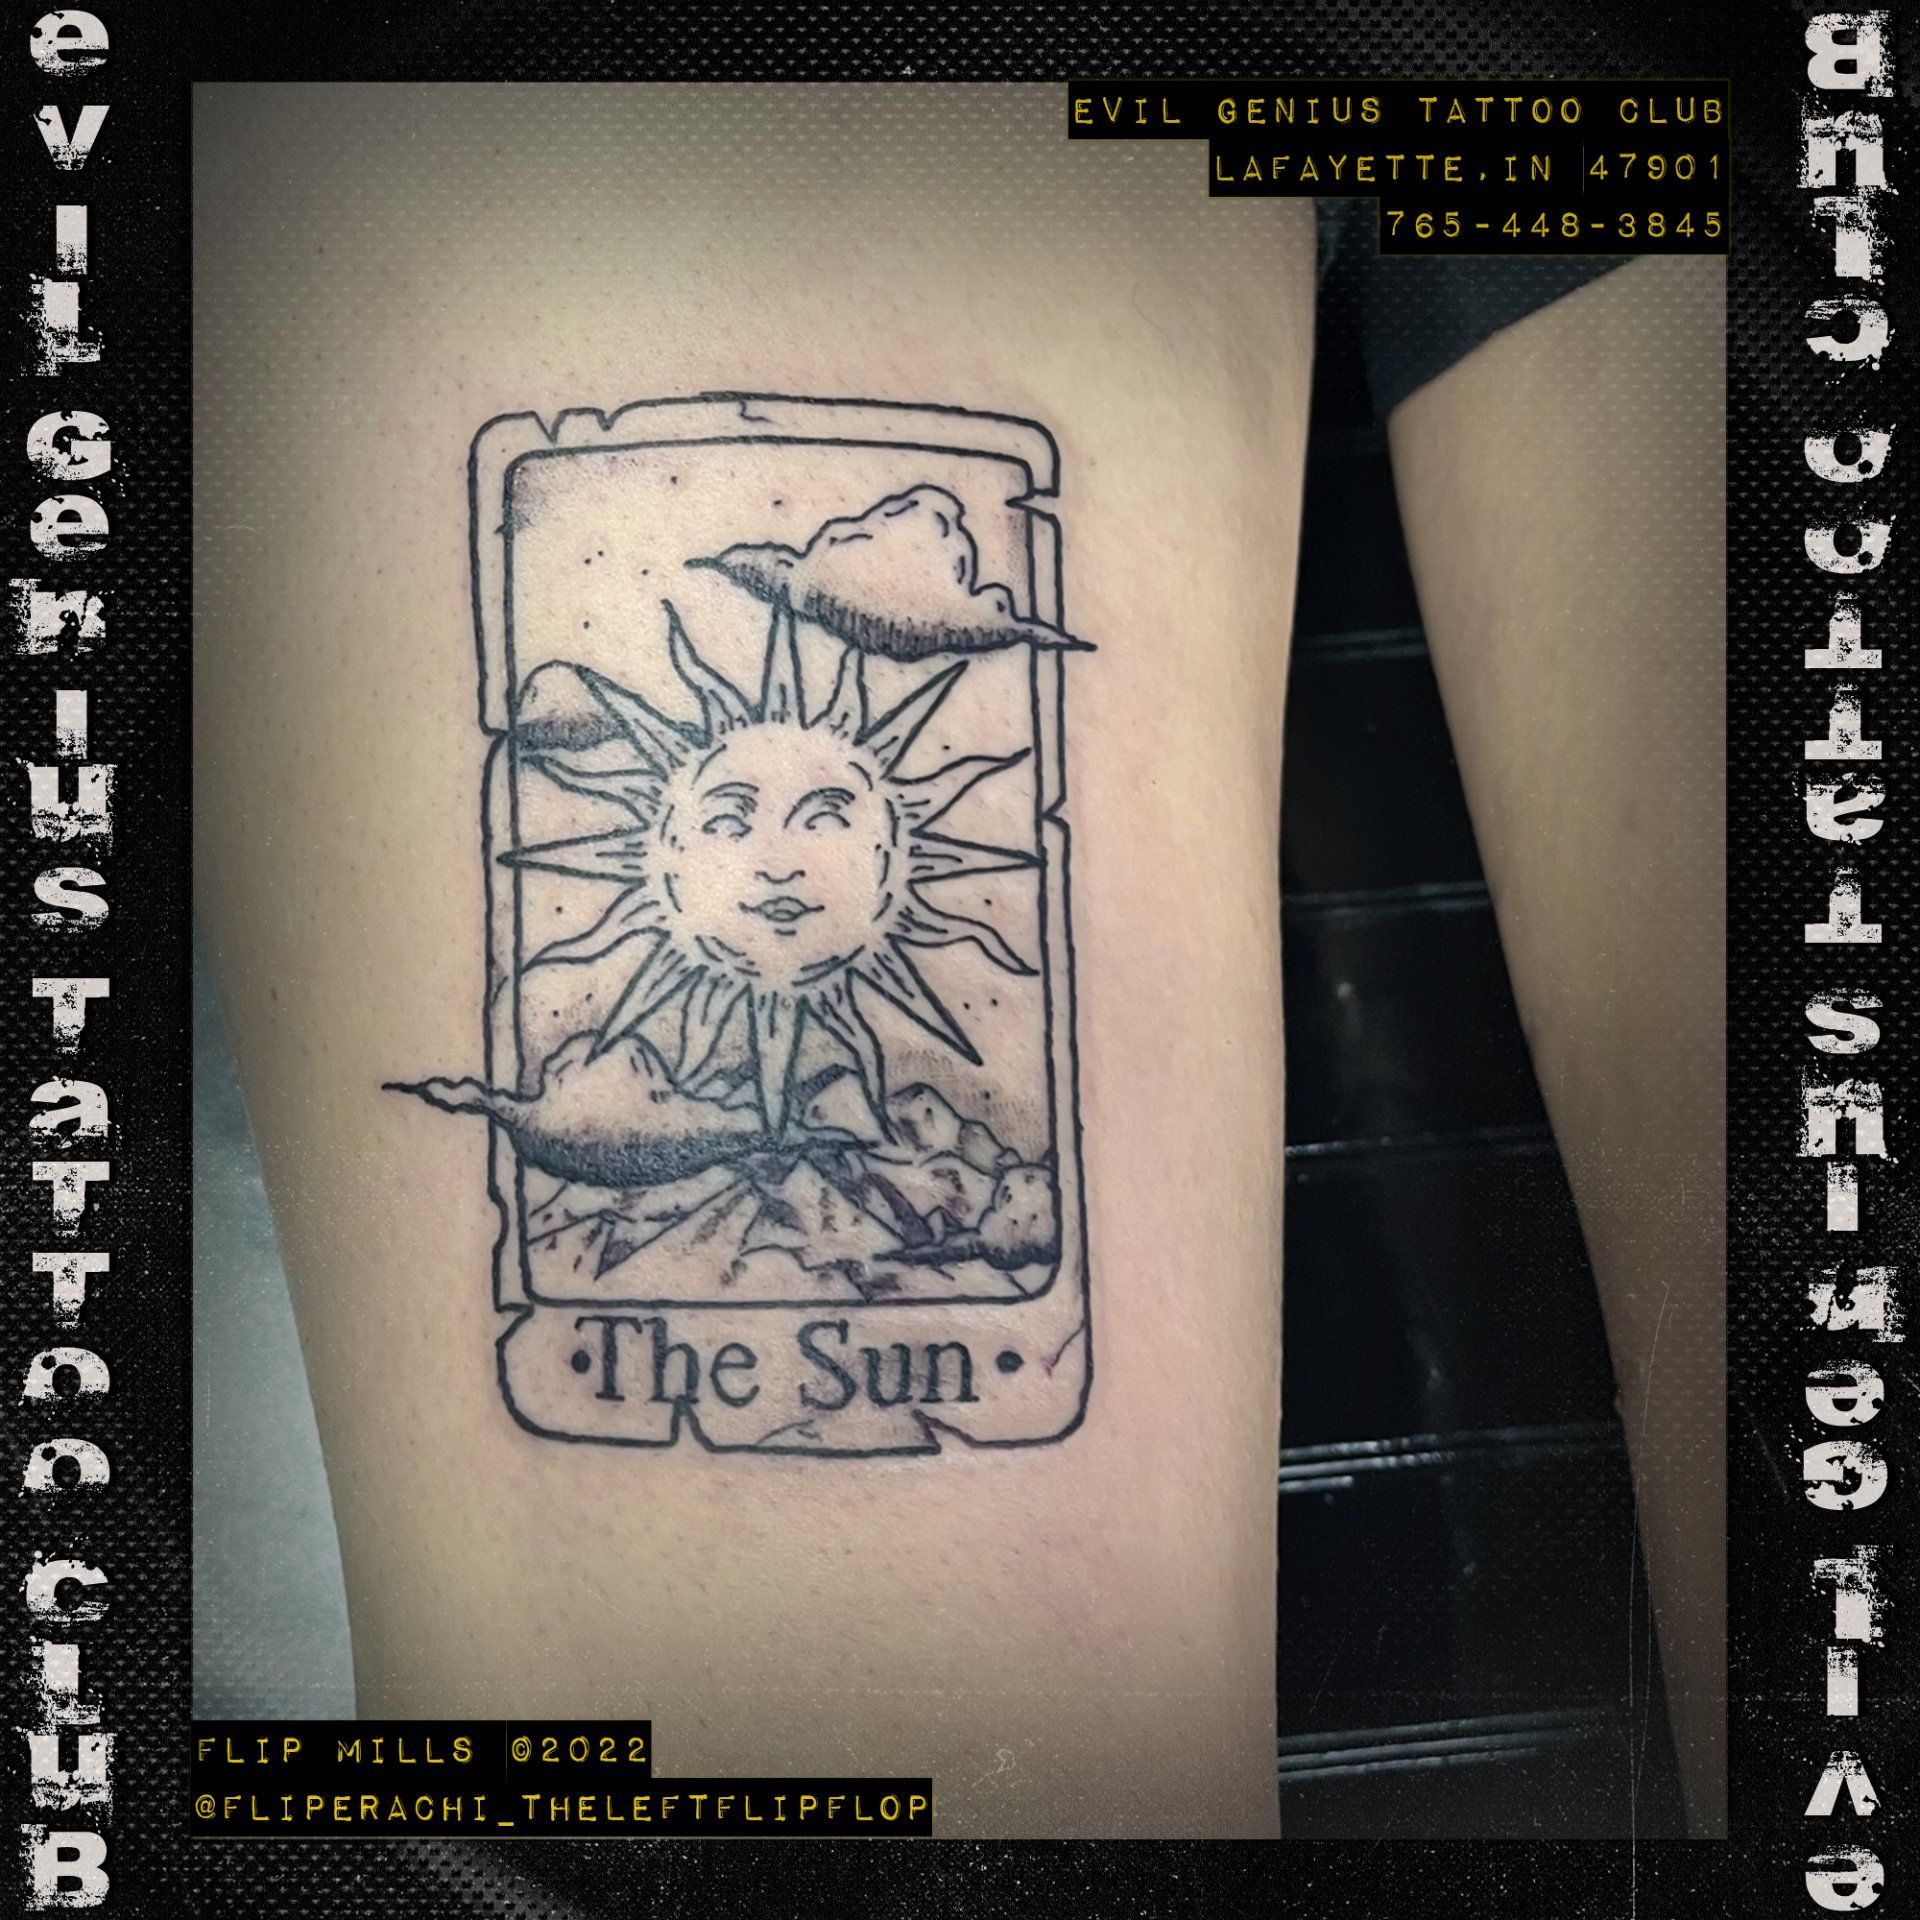 the sun tarot card tattoo by Flip Mills